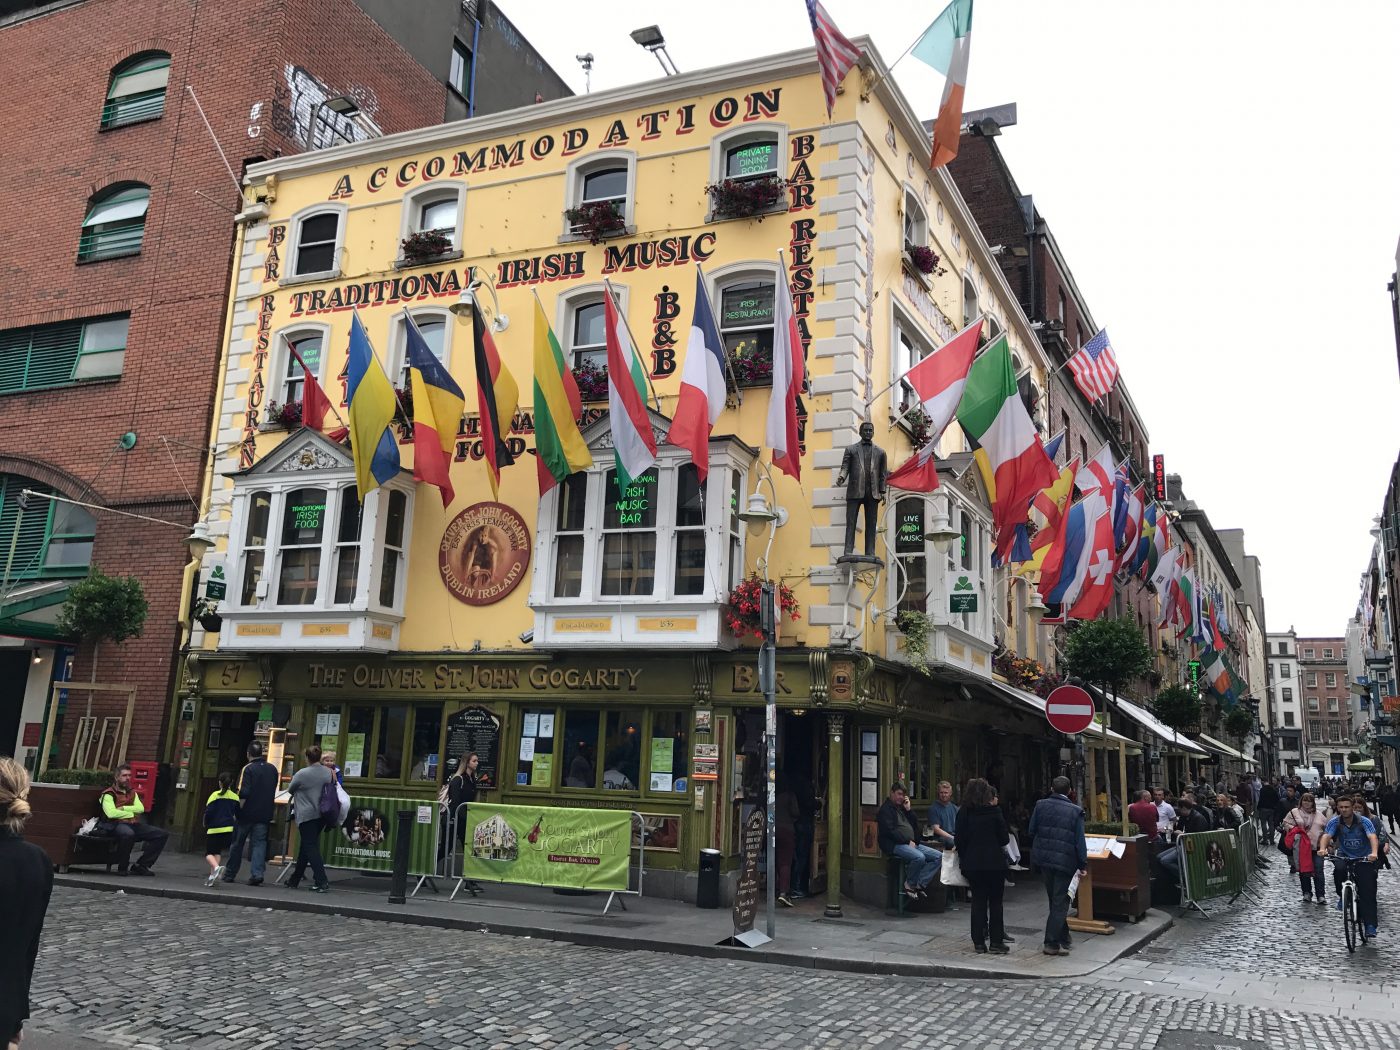 Temple Bar, Dublin